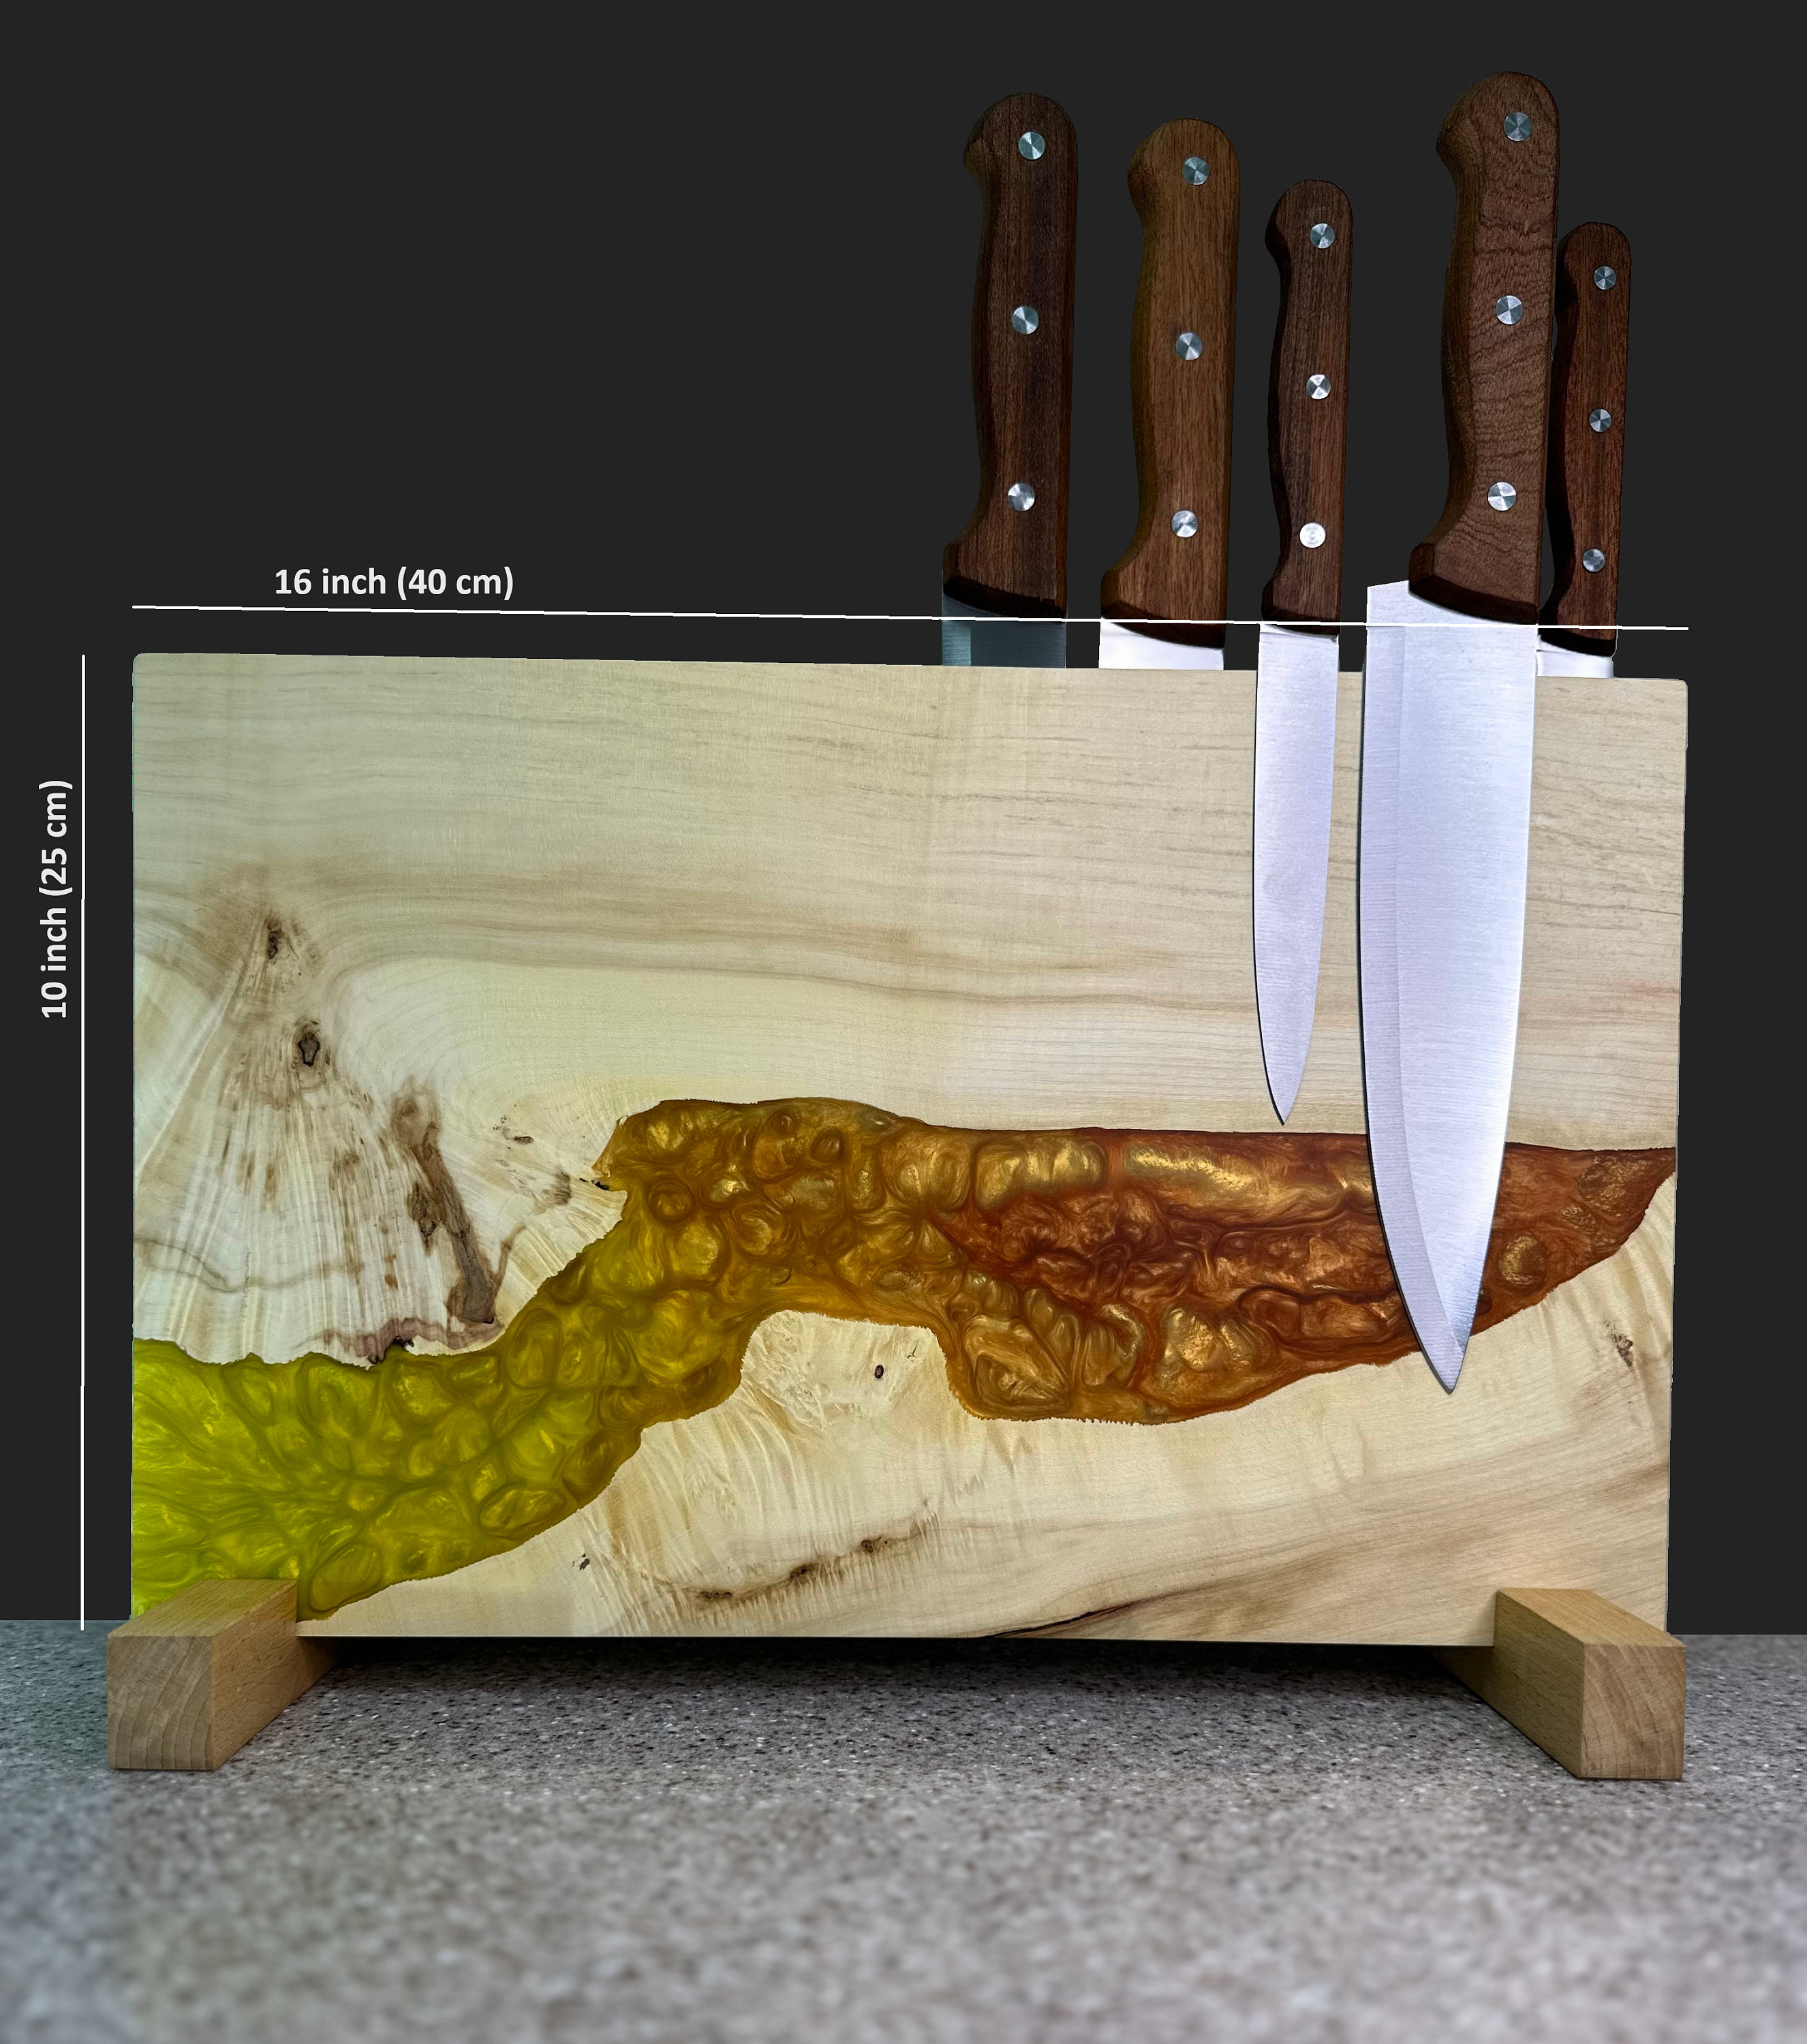  Epoxy Resin & Wood Magnetic Knife Holder – Luxury 6